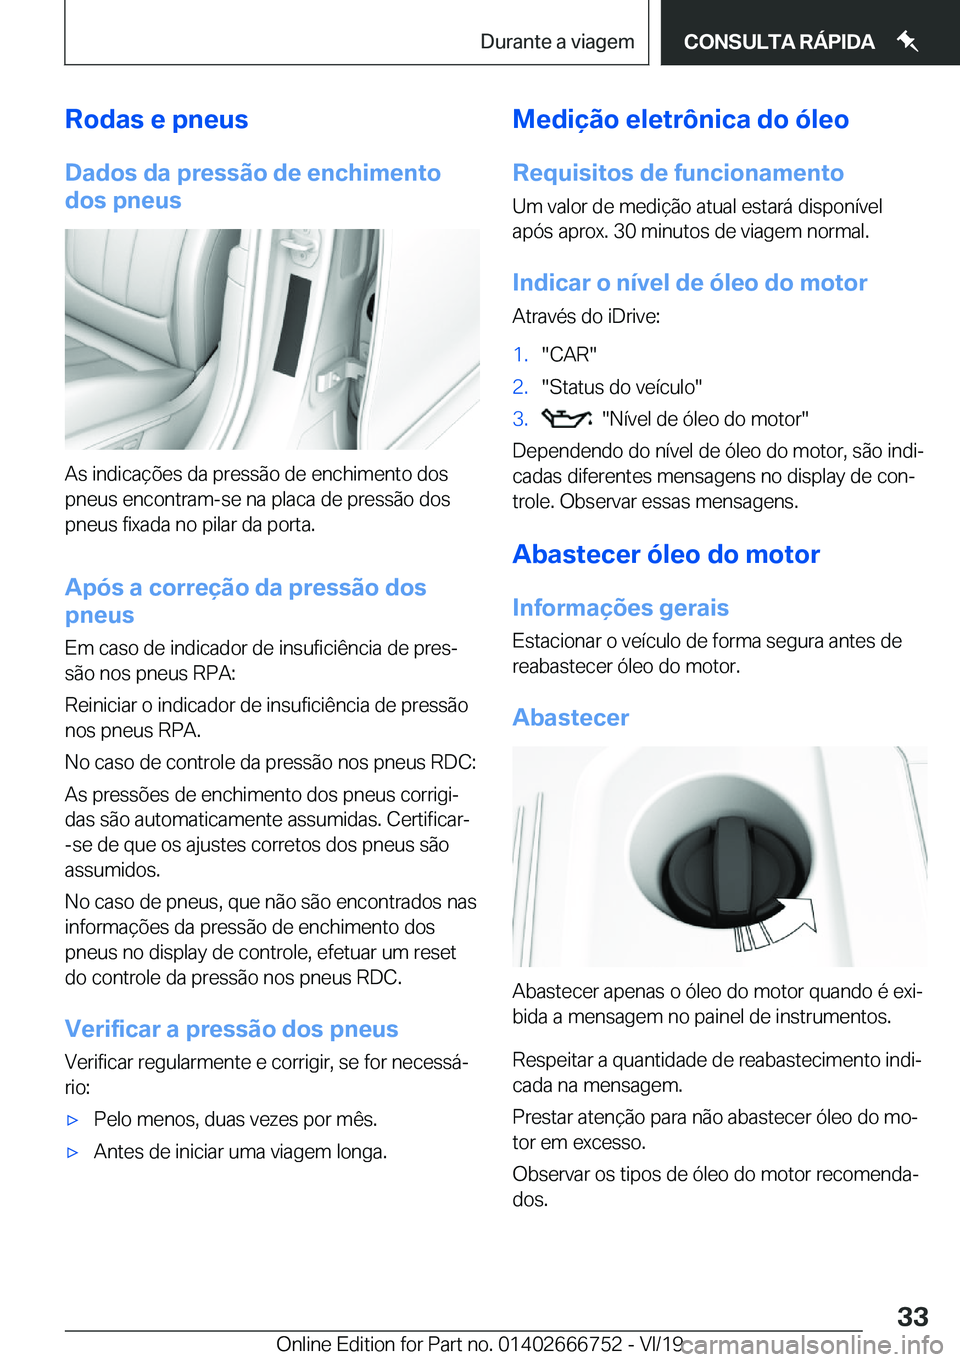 BMW M5 2020  Manual do condutor (in Portuguese) �R�o�d�a�s��e��p�n�e�u�s
�D�a�d�o�s��d�a��p�r�e�s�s�ã�o��d�e��e�n�c�h�i�m�e�n�t�o
�d�o�s��p�n�e�u�s
�A�s��i�n�d�i�c�a�